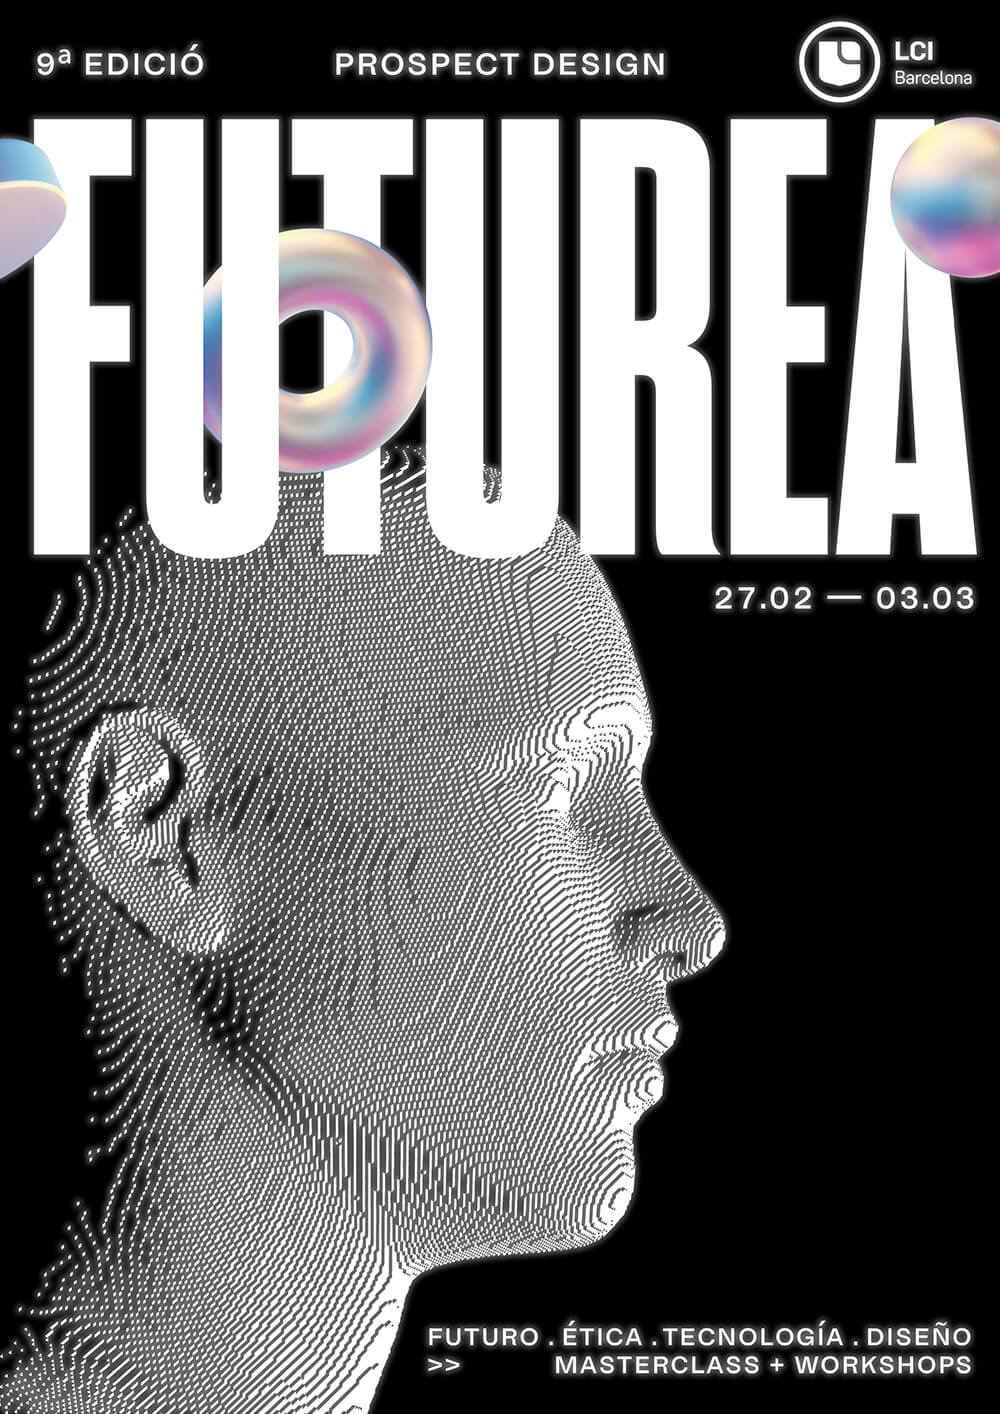 Un póster impactante para la 9ª edición de FUTUREA, con una imagen holográfica de perfil con fechas y temas de futuro, ética, tecnología y diseño.